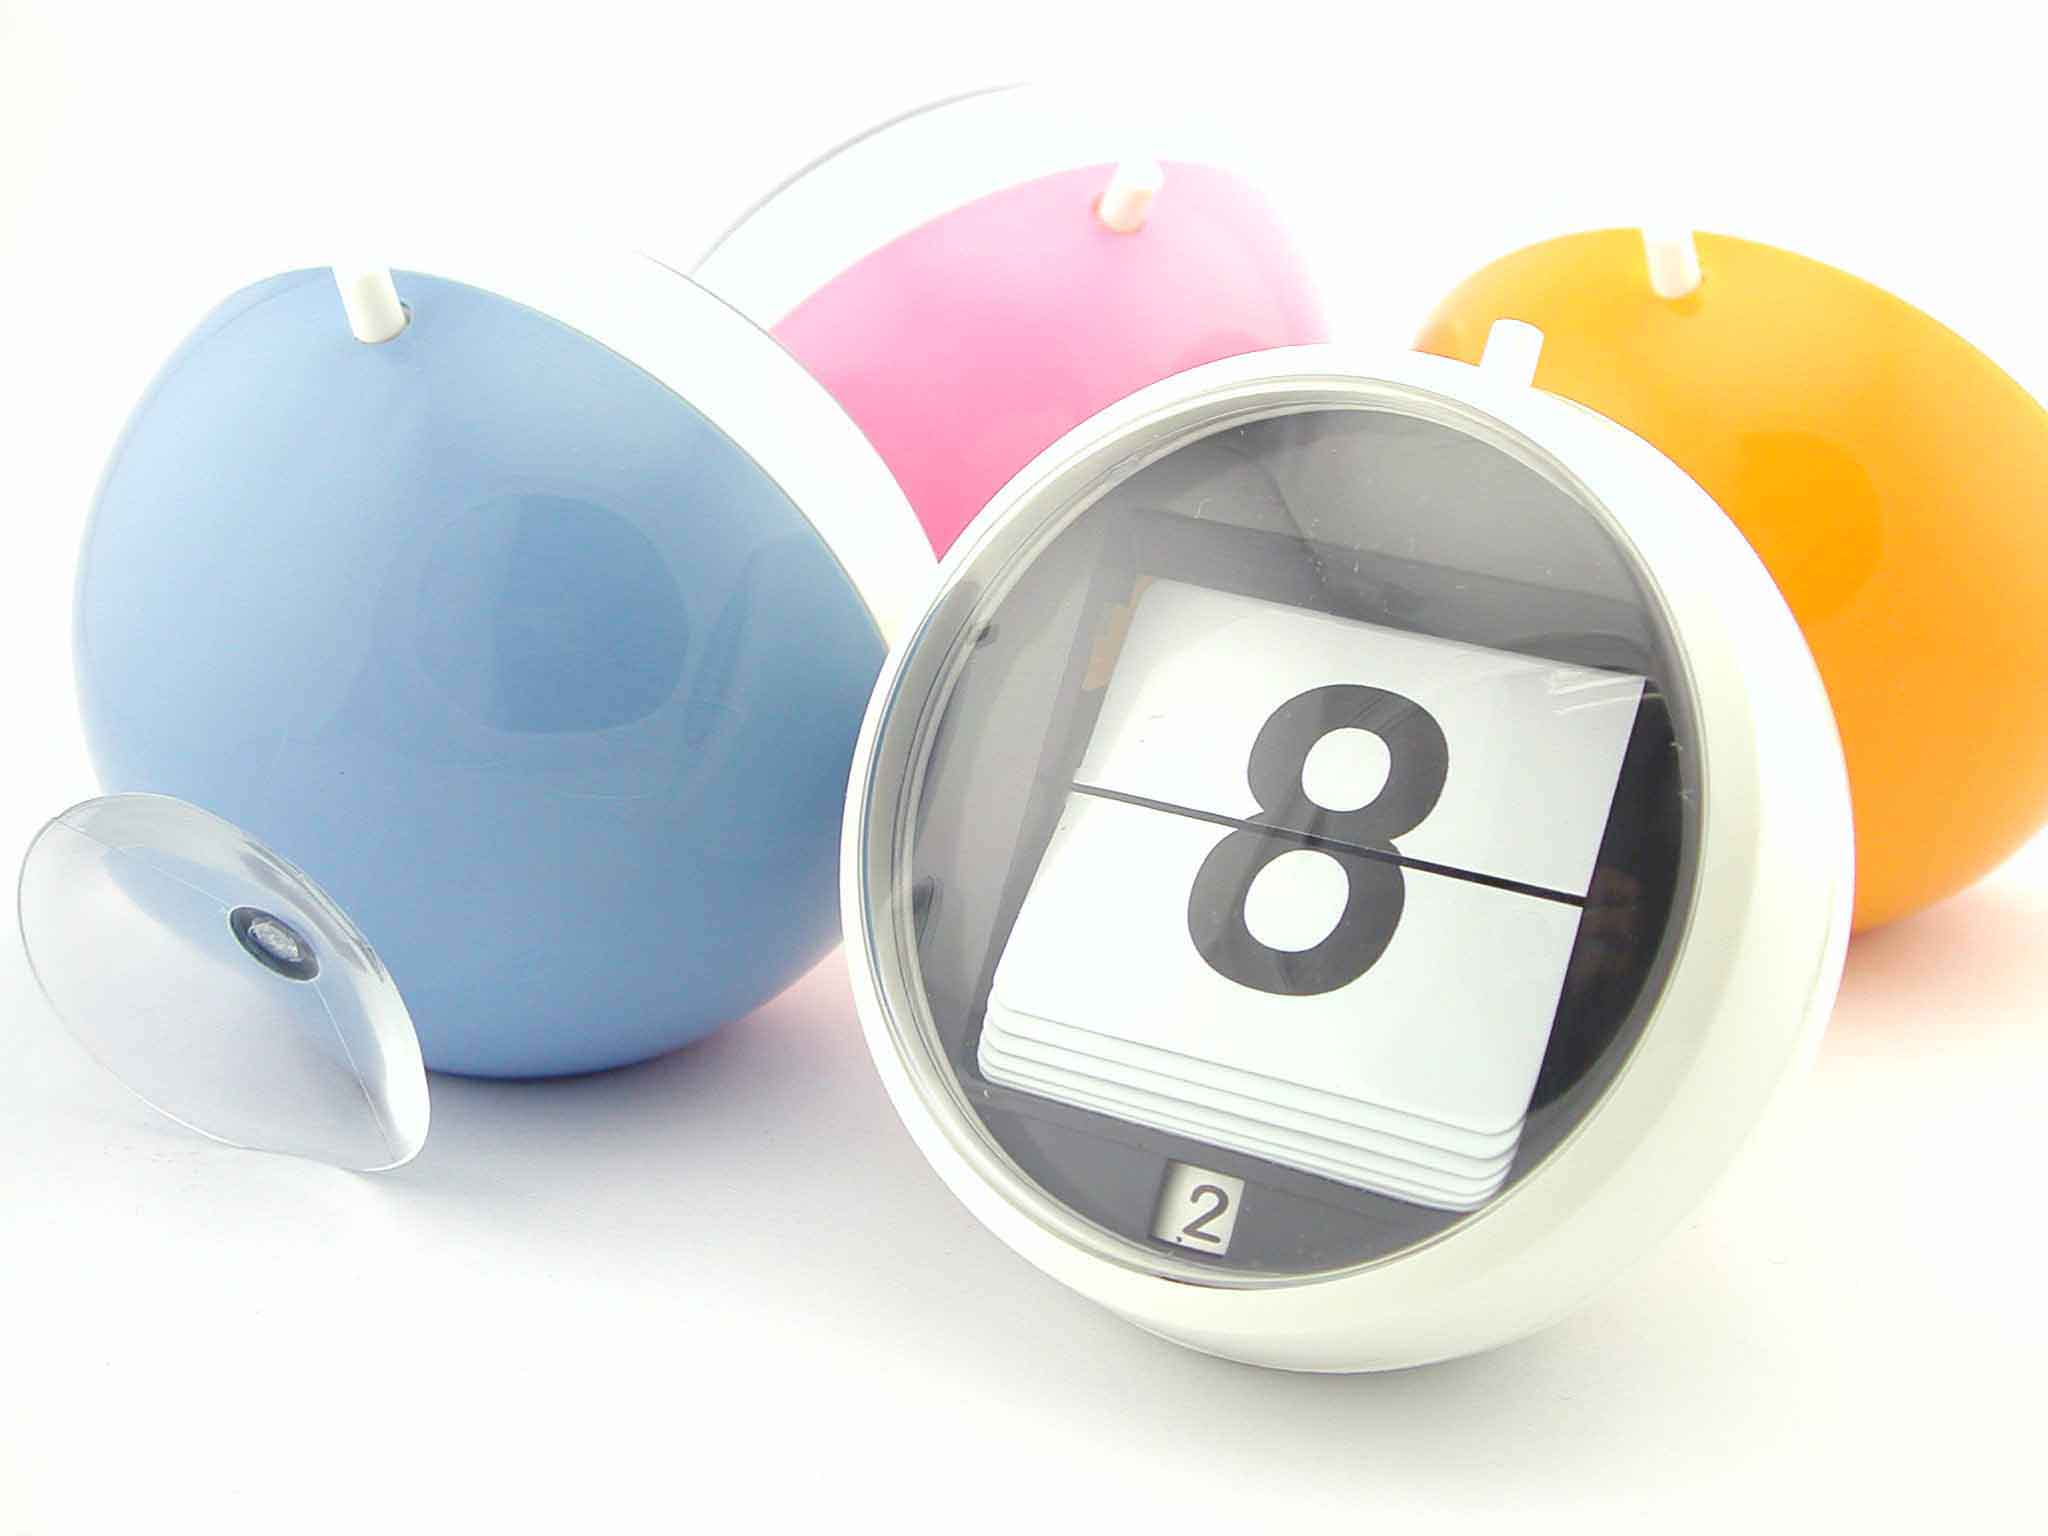  Our Item-Plastic Ball Shape Calendar ( Our Item-Plastic Ball Shape Calendar)